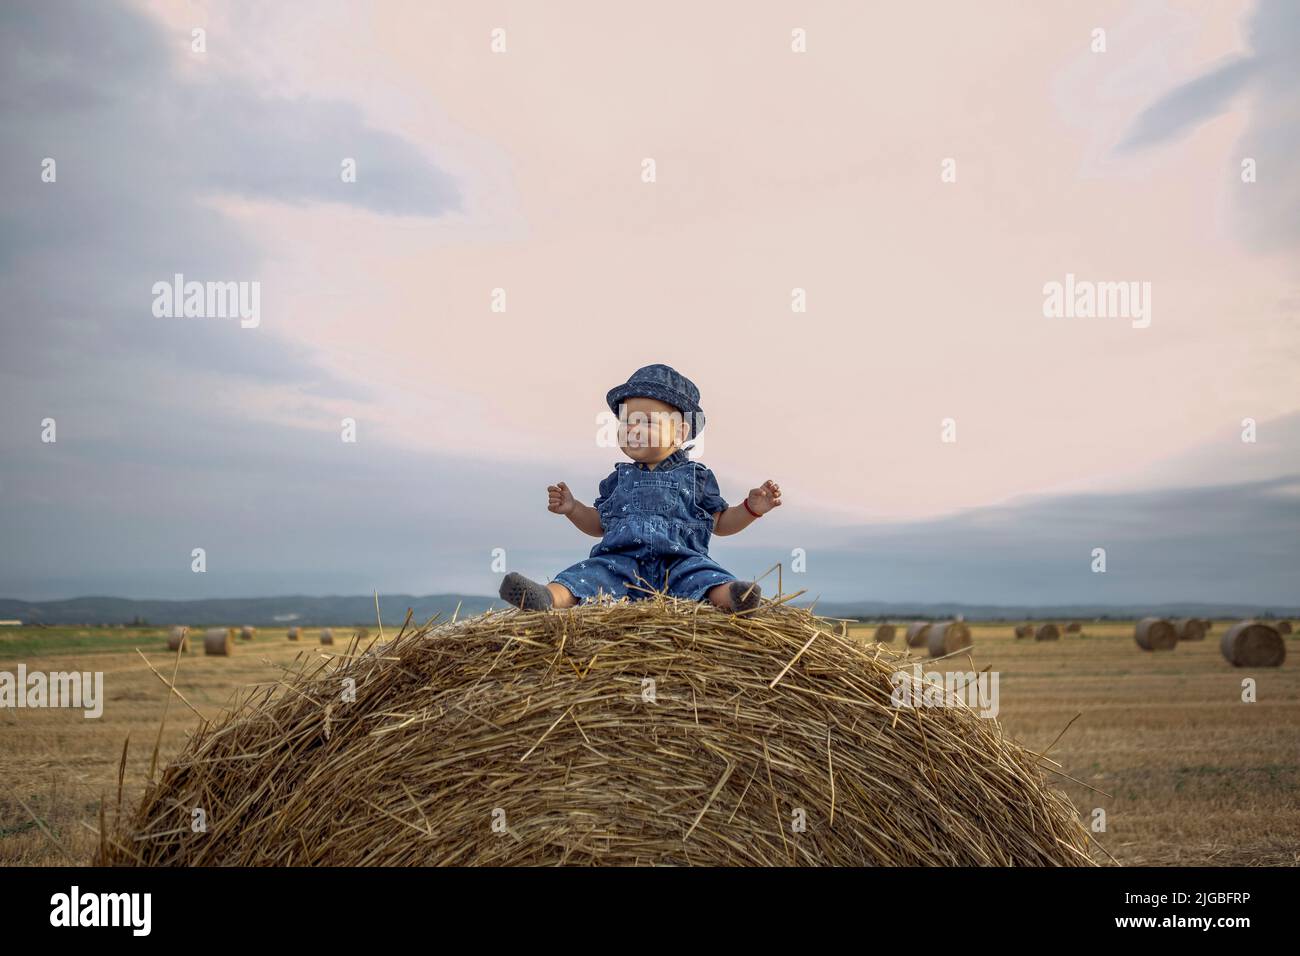 enfant dans un champ de blé.fille mignonne souriante sur un champ de blé d'or au coucher du soleil. Banque D'Images